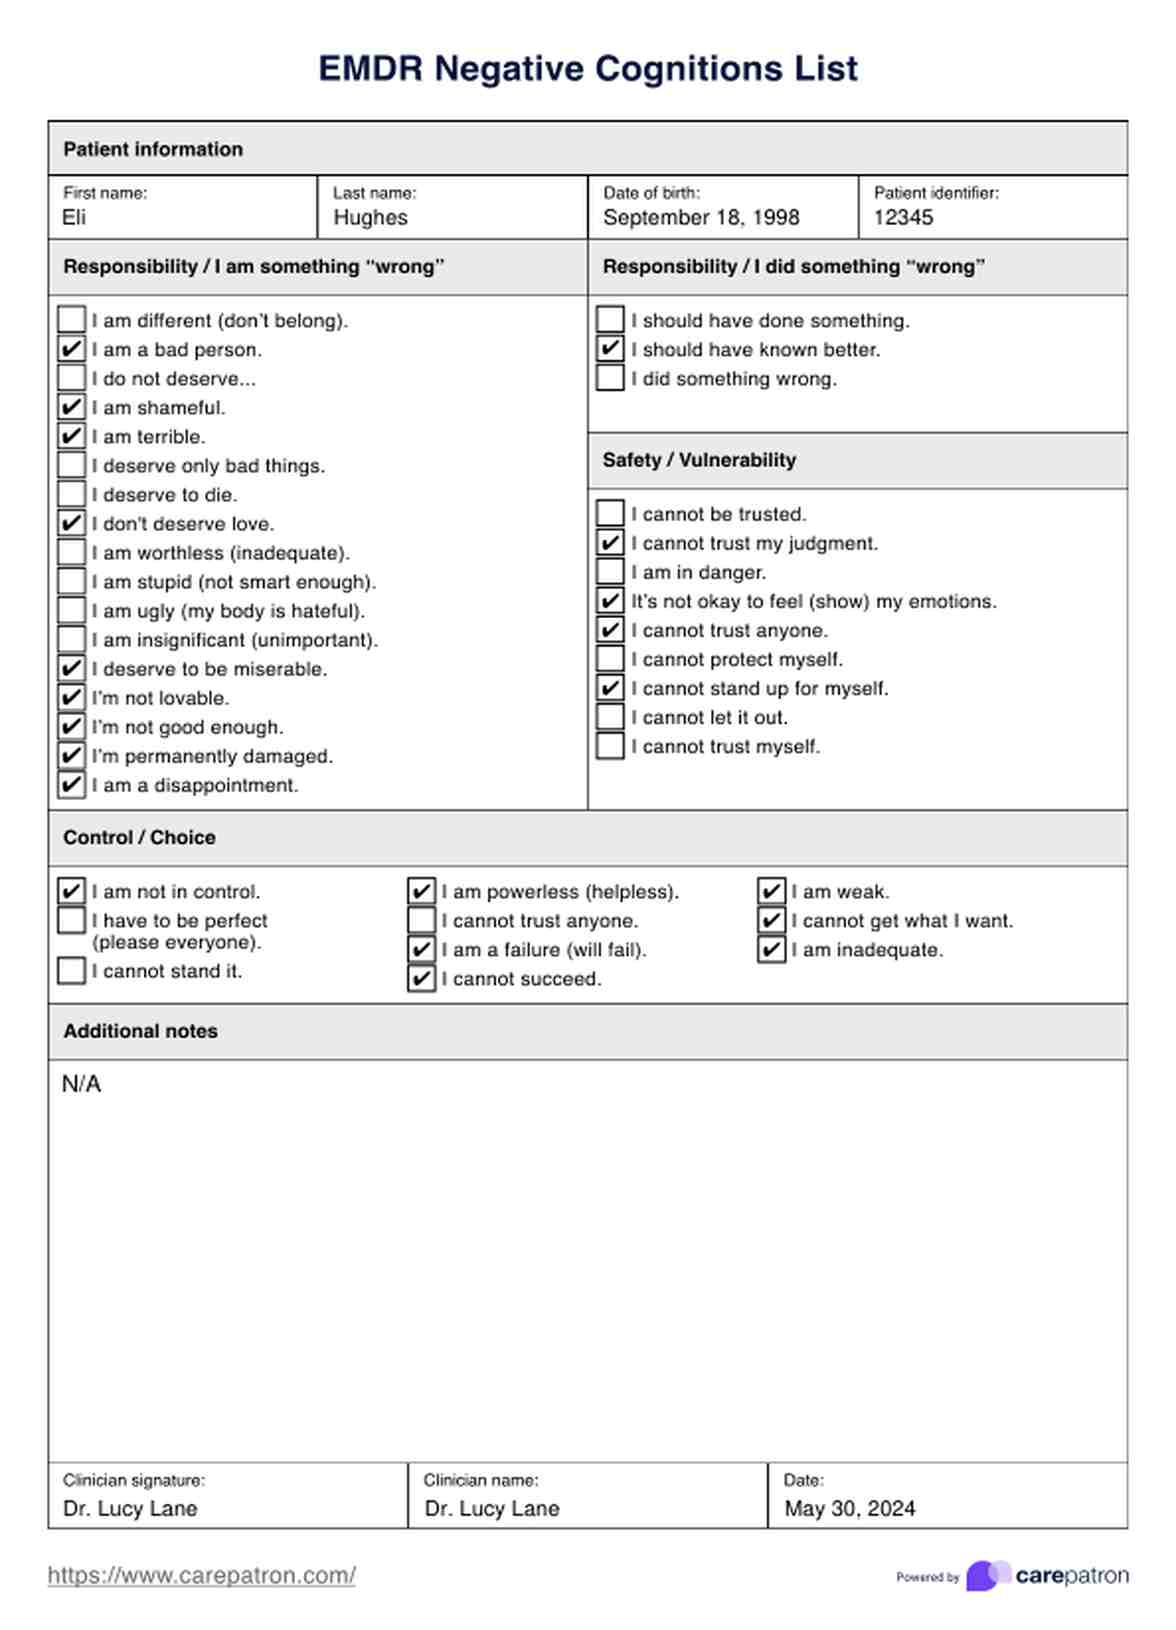 Lista de Cogniciones Negativas del EMDR PDF Example